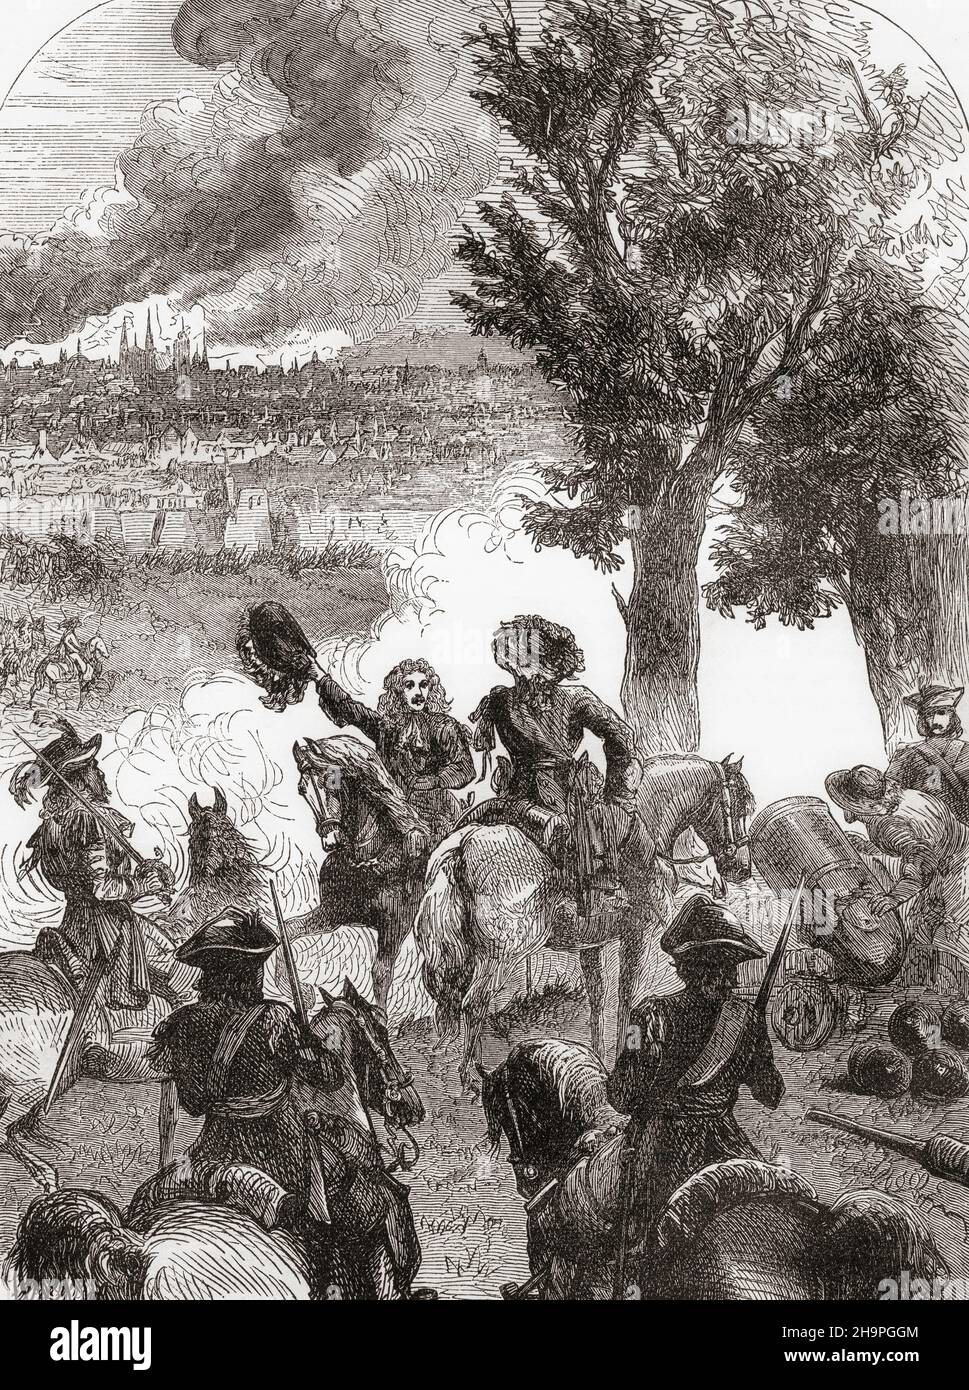 Die Bombardierung von Brüssel, 1695, durch die Truppen Ludwigs XIV. Während des neun-Jahres-Krieges. Aus Cassells Illustrated History of England, veröffentlicht um 1890. Stockfoto